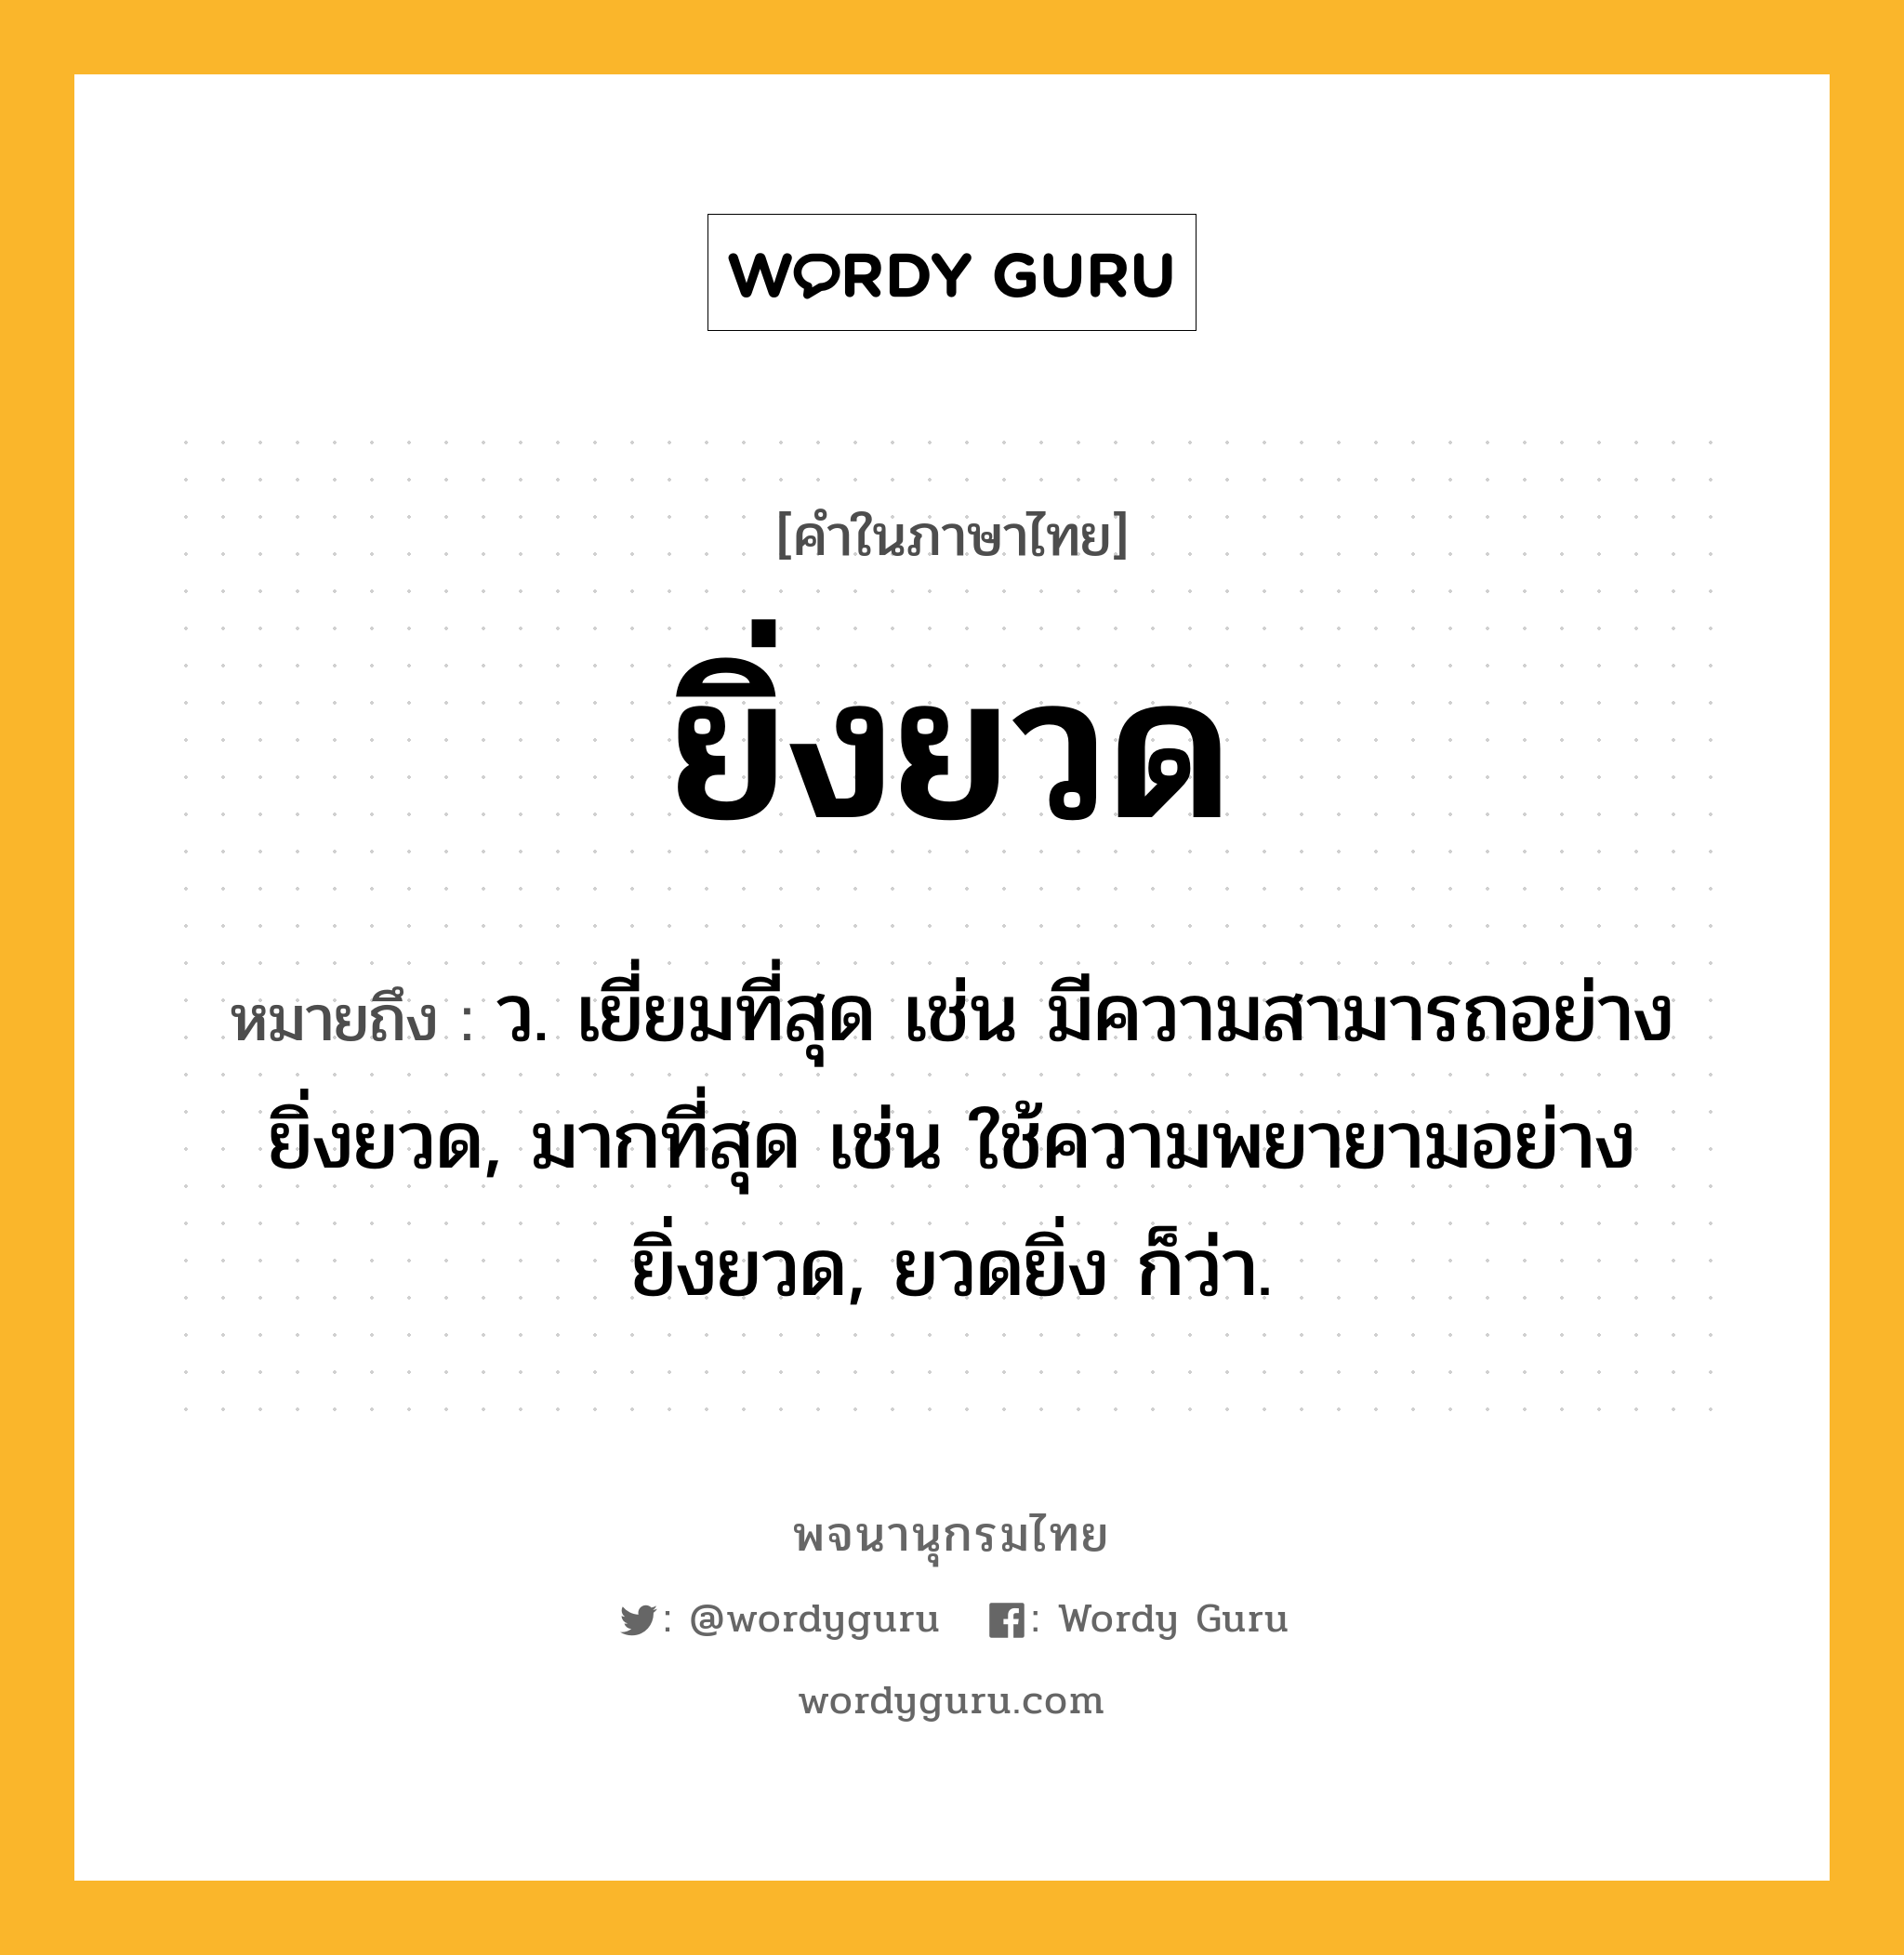 ยิ่งยวด ความหมาย หมายถึงอะไร?, คำในภาษาไทย ยิ่งยวด หมายถึง ว. เยี่ยมที่สุด เช่น มีความสามารถอย่างยิ่งยวด, มากที่สุด เช่น ใช้ความพยายามอย่างยิ่งยวด, ยวดยิ่ง ก็ว่า.